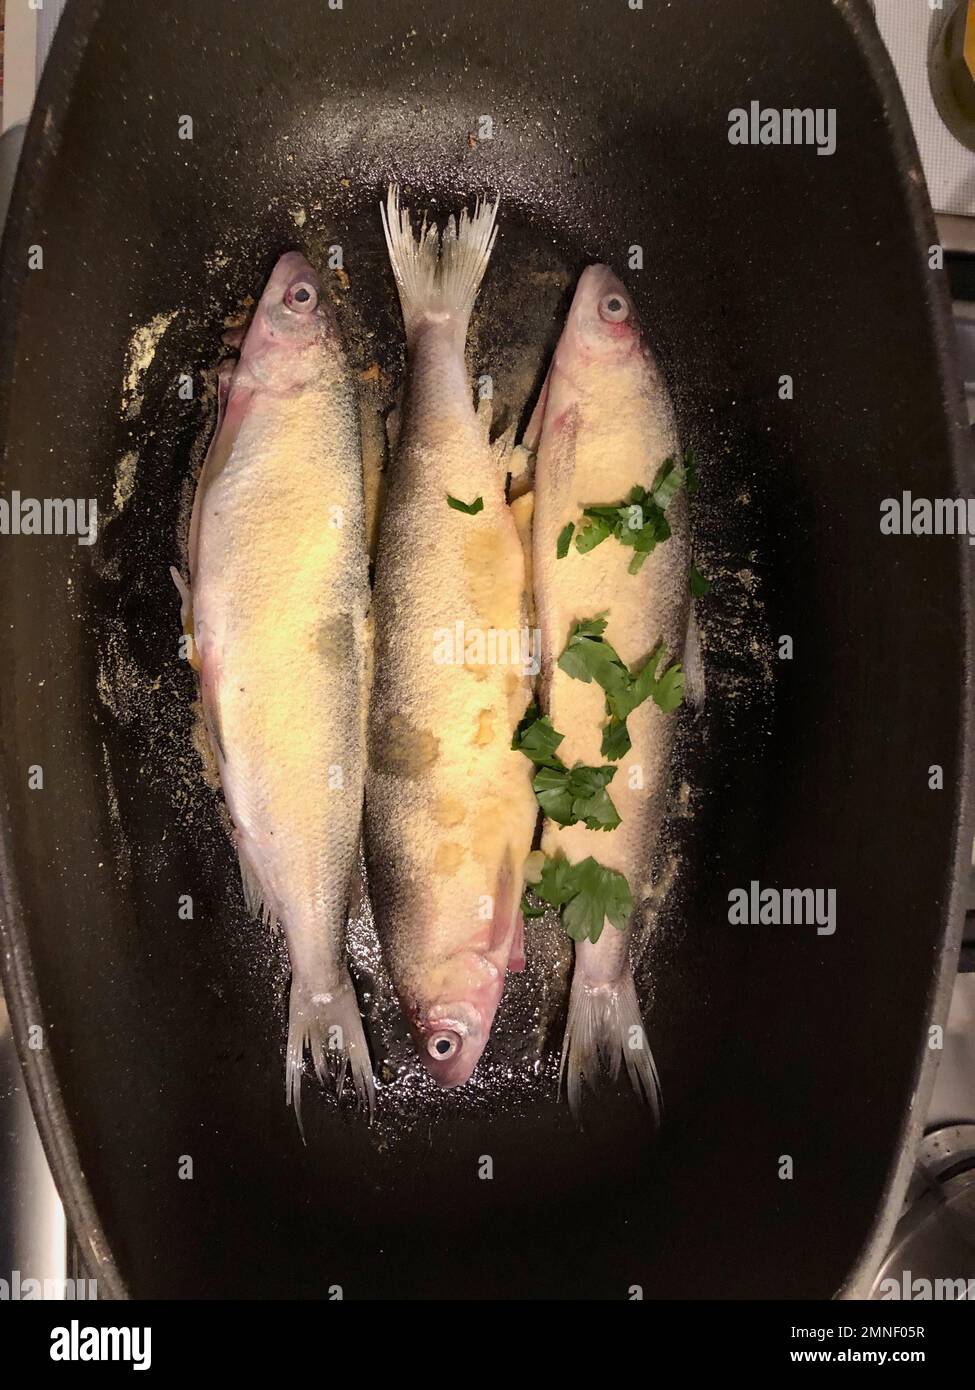 Tre pesci freschi in padella, con pangrattato, preparando la trota per cena Foto Stock